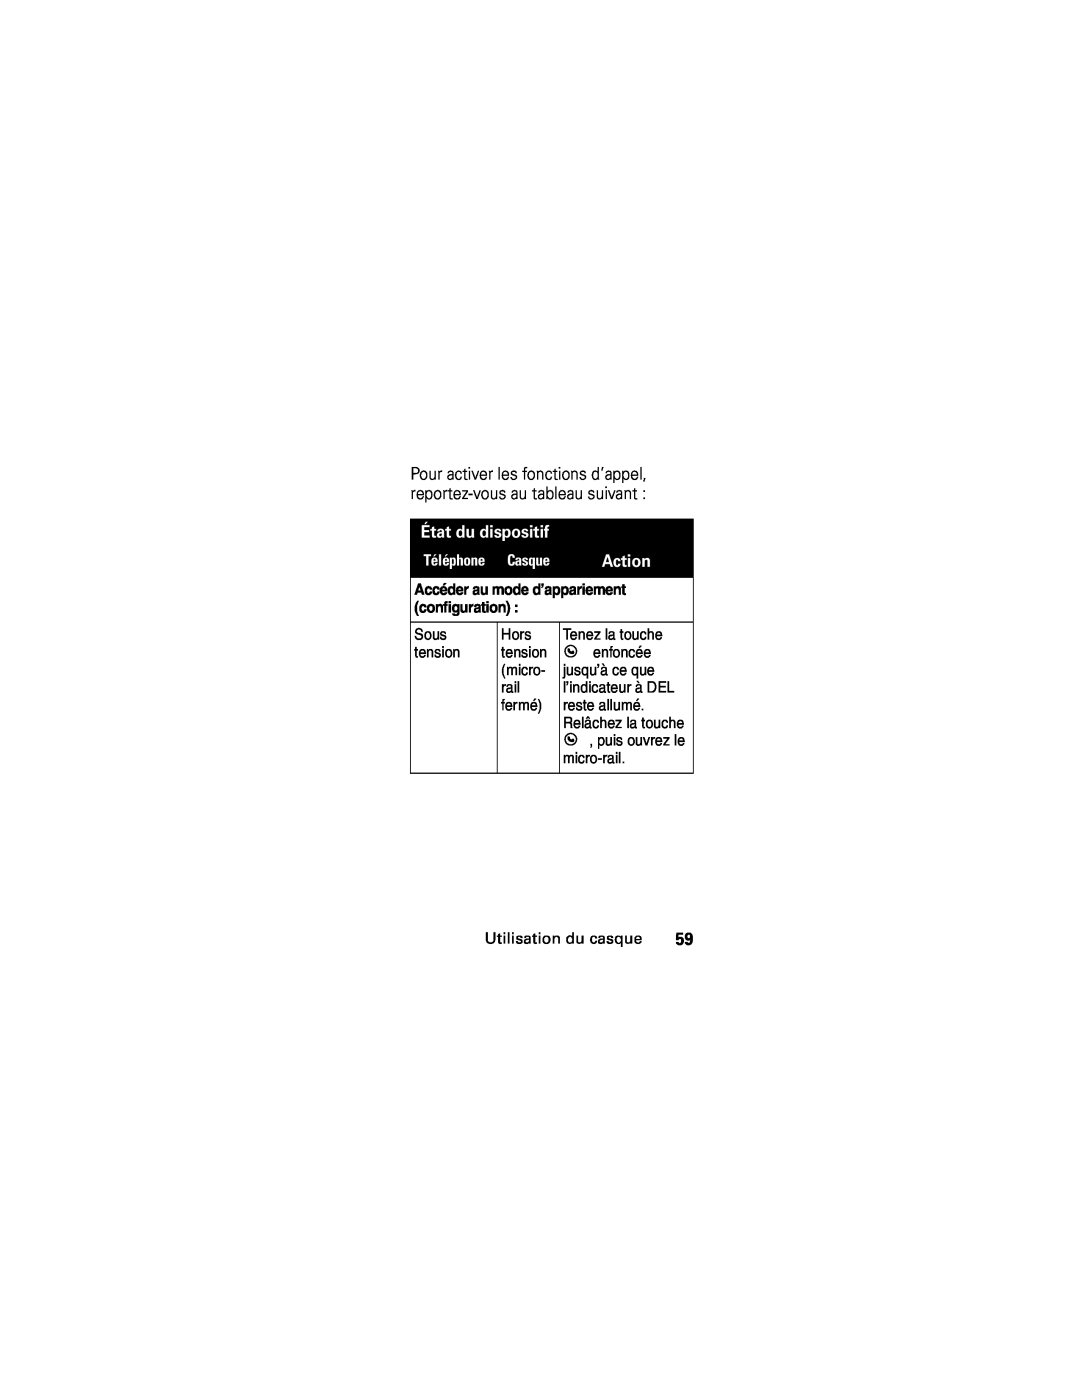 Motorola HS850 manual État du dispositif, Action, Accéder au mode d’appariement, configuration 